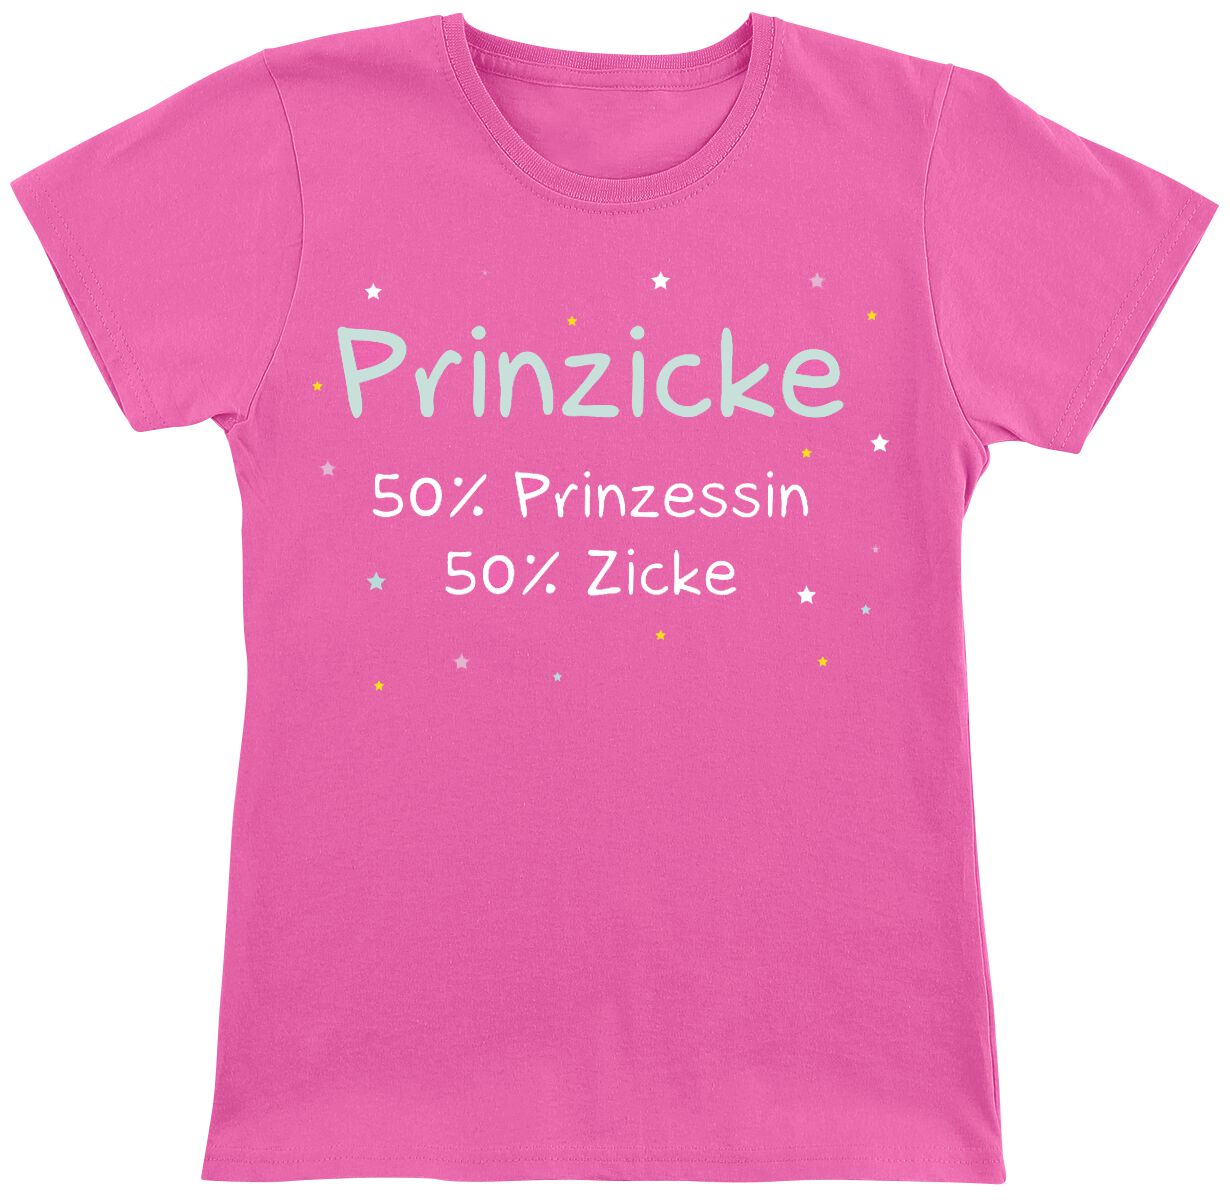 Sprüche Kids - Prinzicke T-Shirt pink in 152